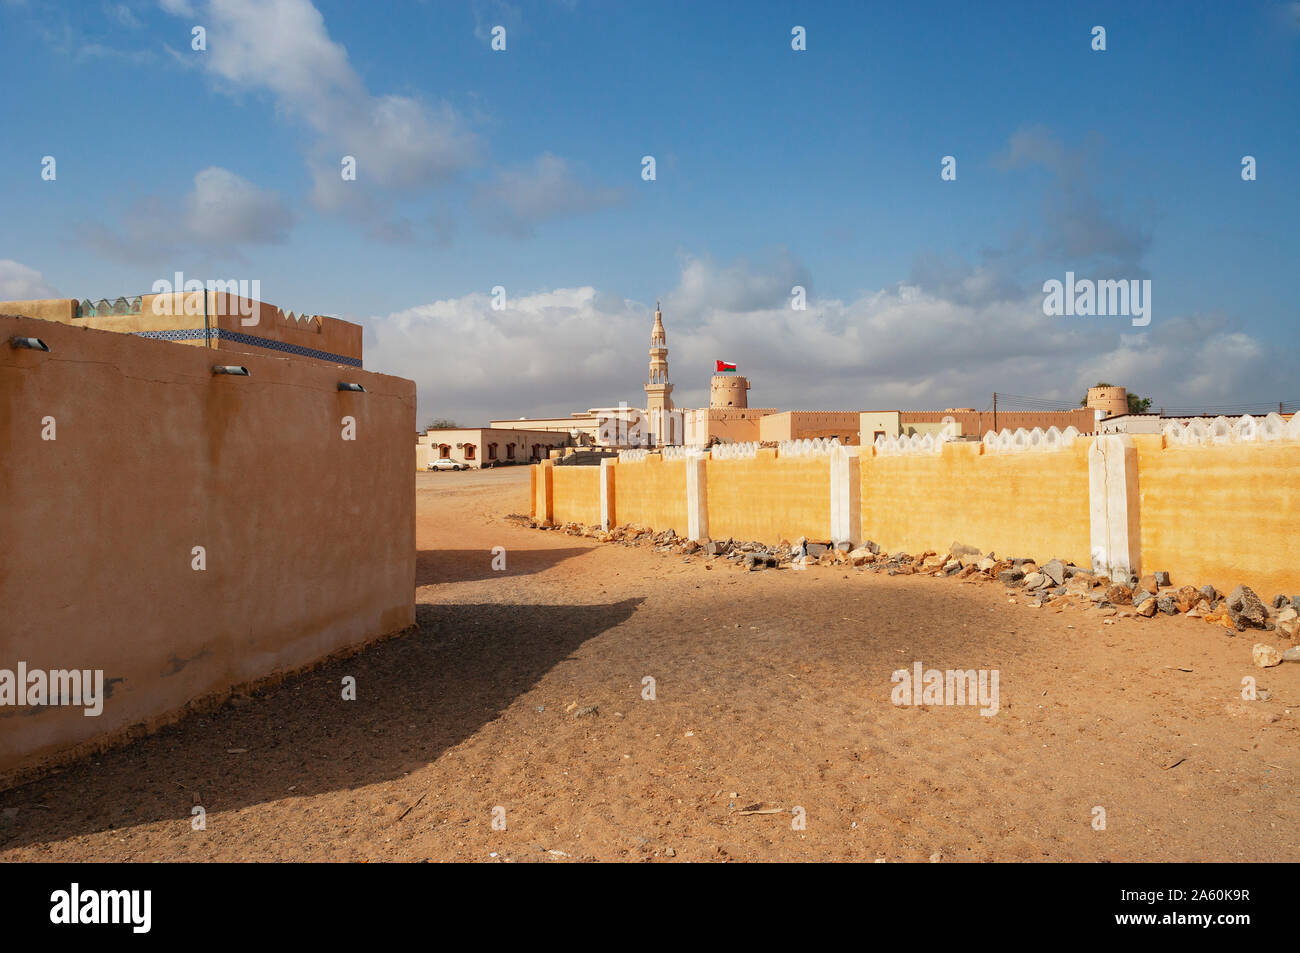 Sultanate Of Oman, Ras al Hadd, Ras al Hadd Castle with Omani flag and minaret Stock Photo